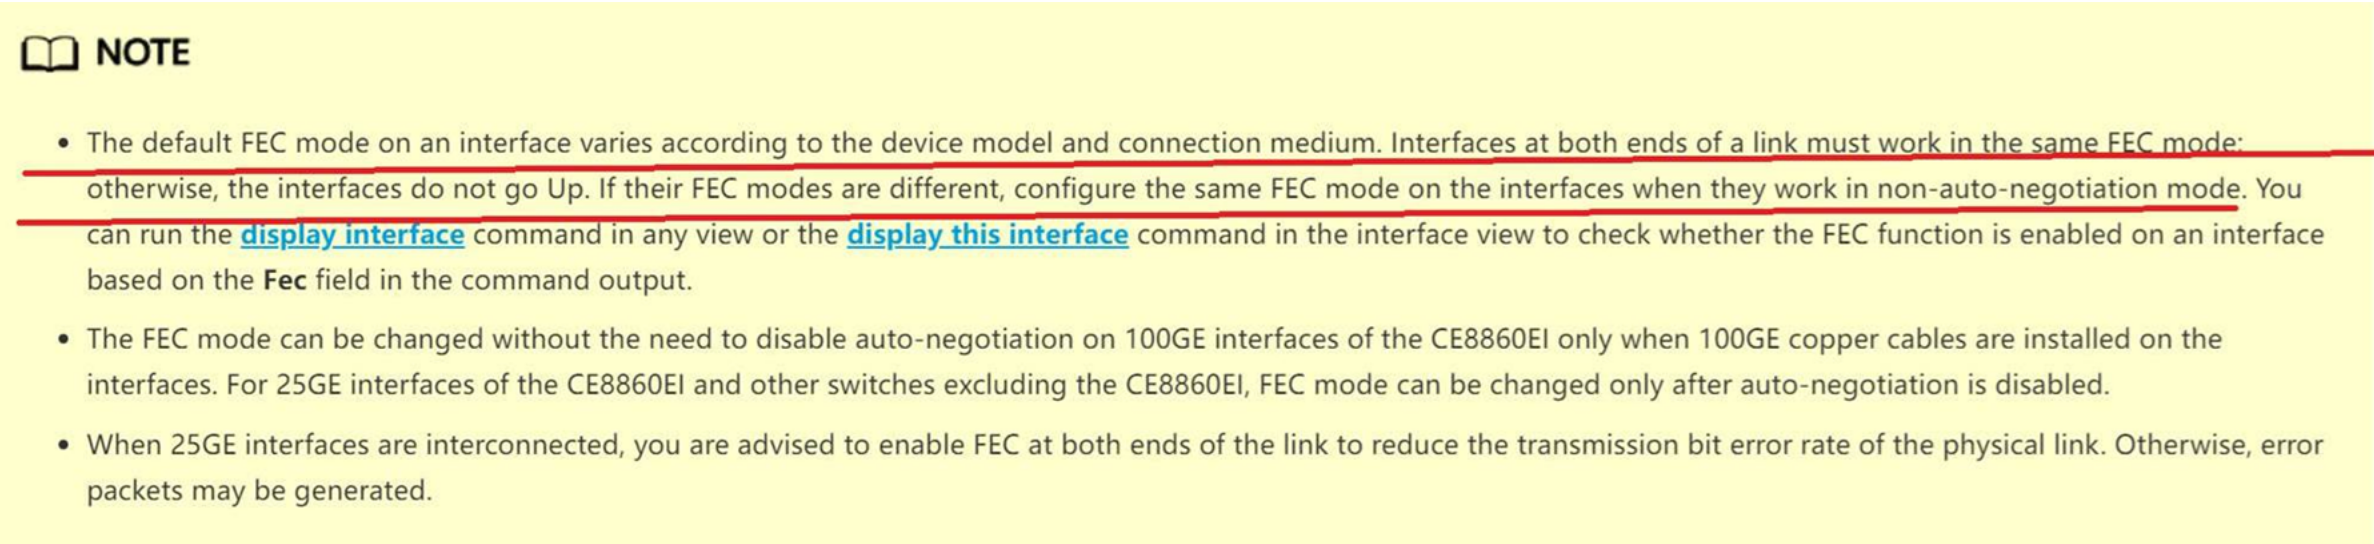 Выдержка из официальной документации Huawei относительно применения FEC